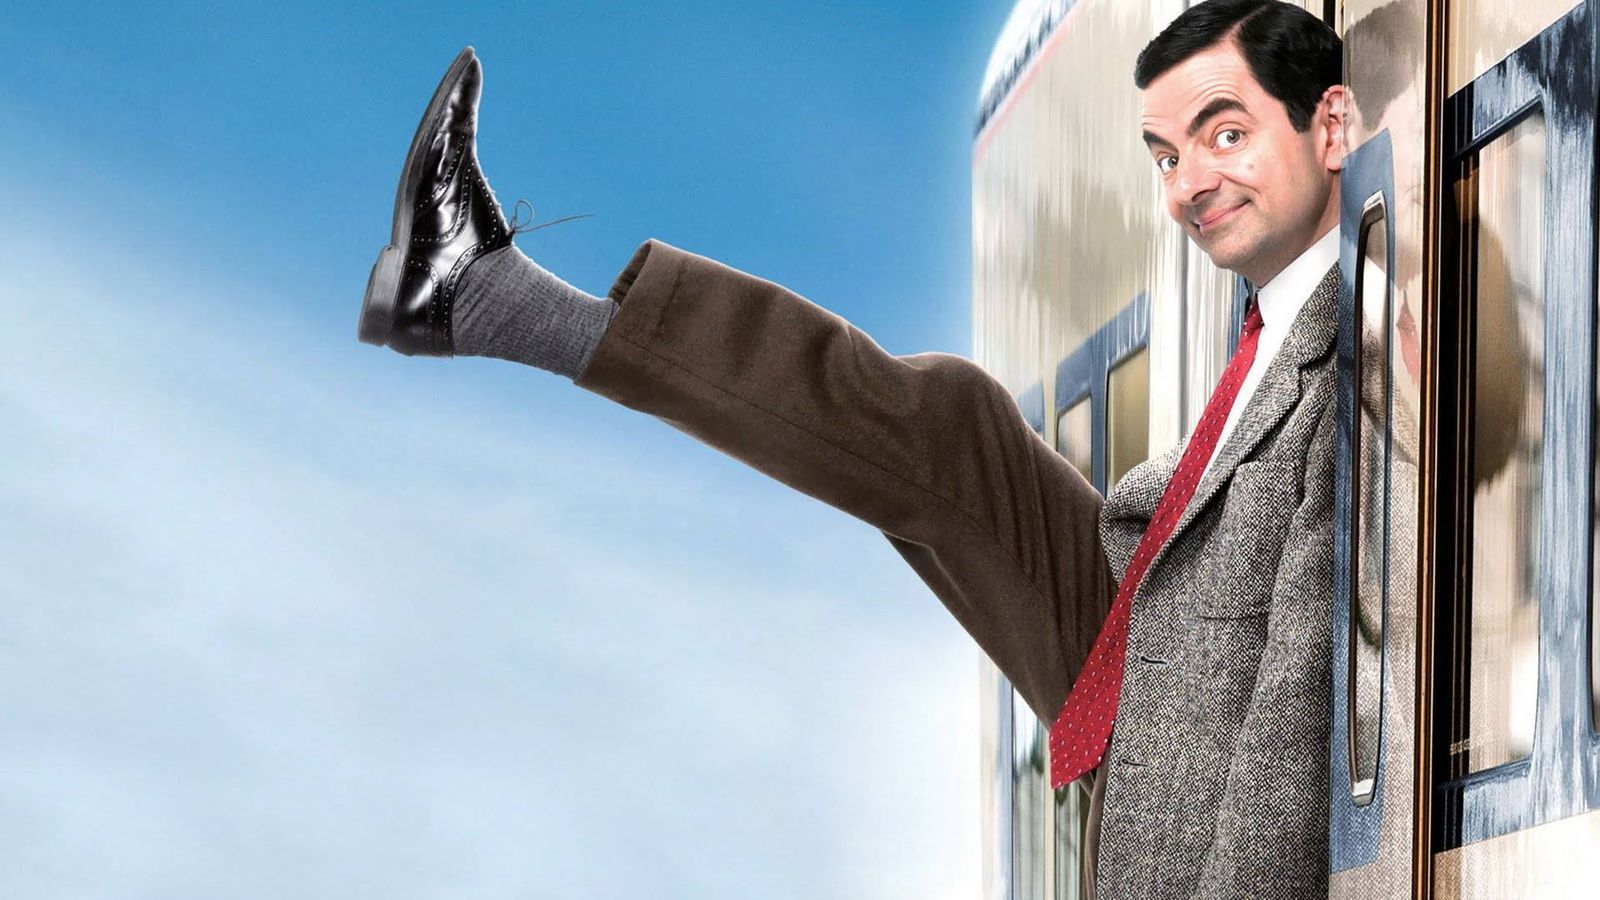 Foto: Mr. Bean (Rowan Atkinson), un clásico del humor british.